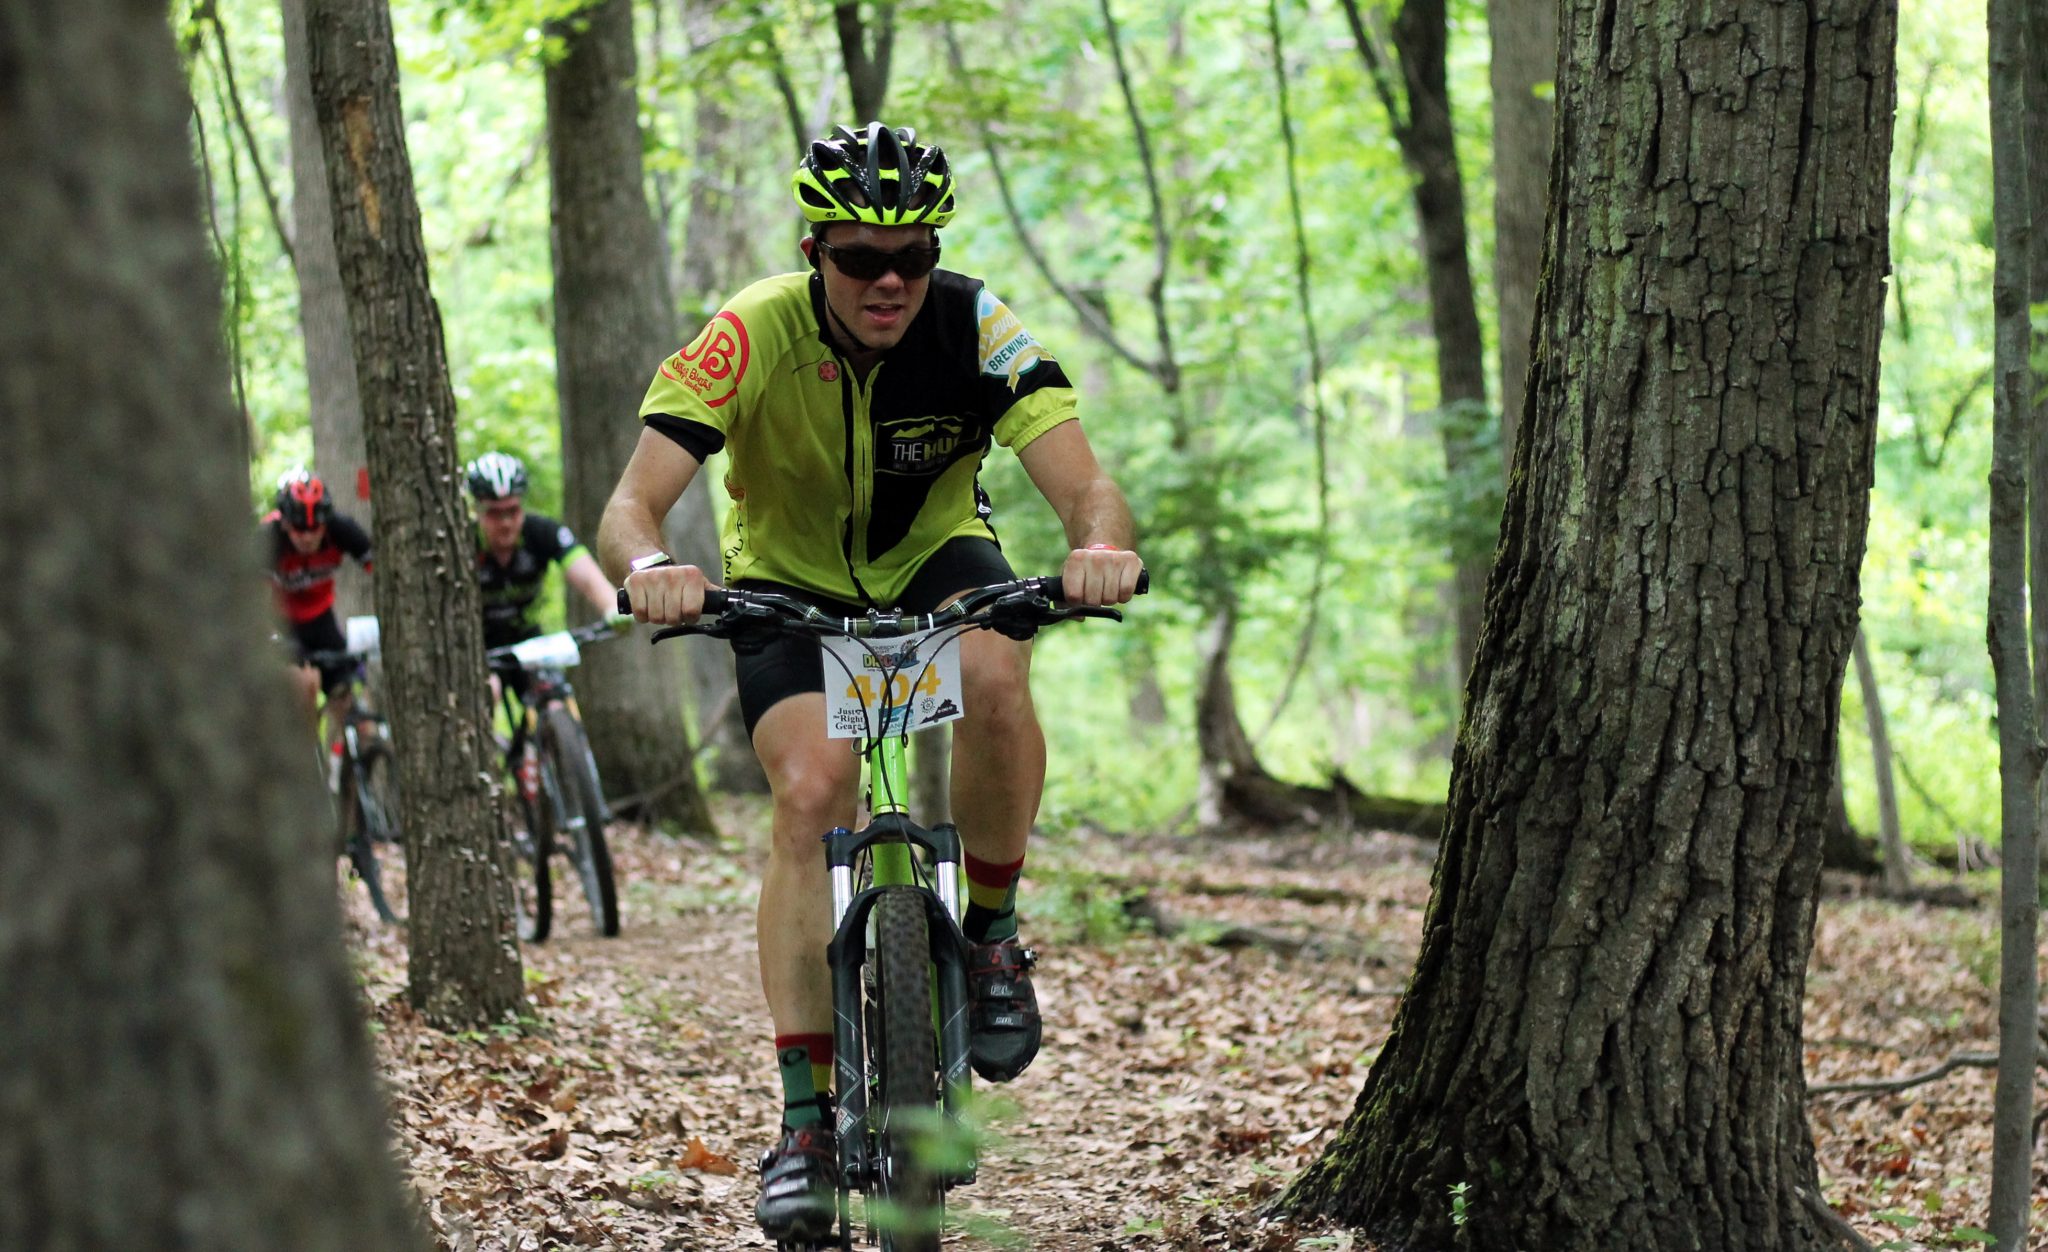 Sidewinder mountain biking trail in Mill Mountain Park in Roanoke